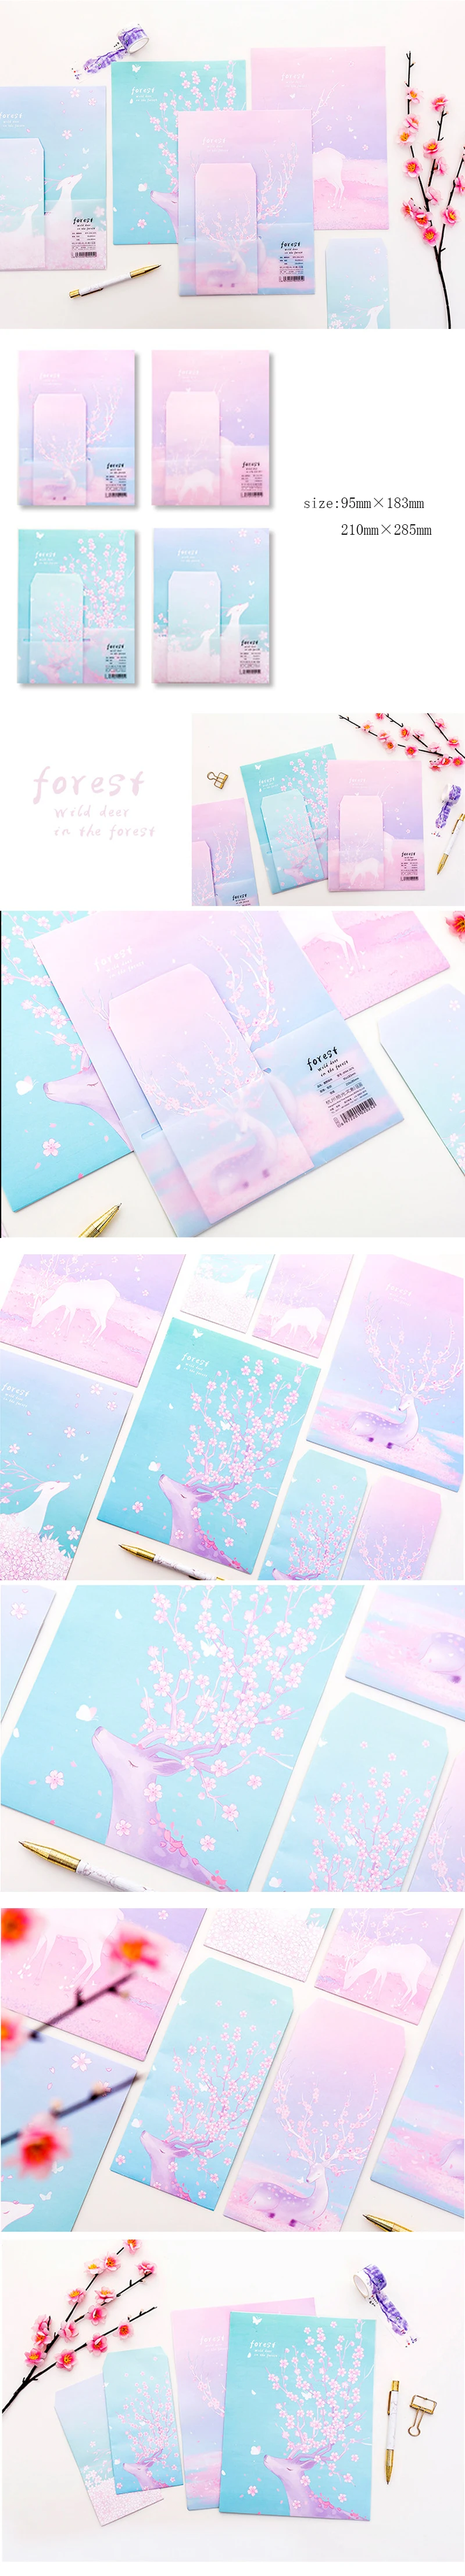 3 конверт + 6 бумага/лот луй лес розовый сливы открытки с конвертом крышка поздравительных открыток бумажные конверты канцелярские